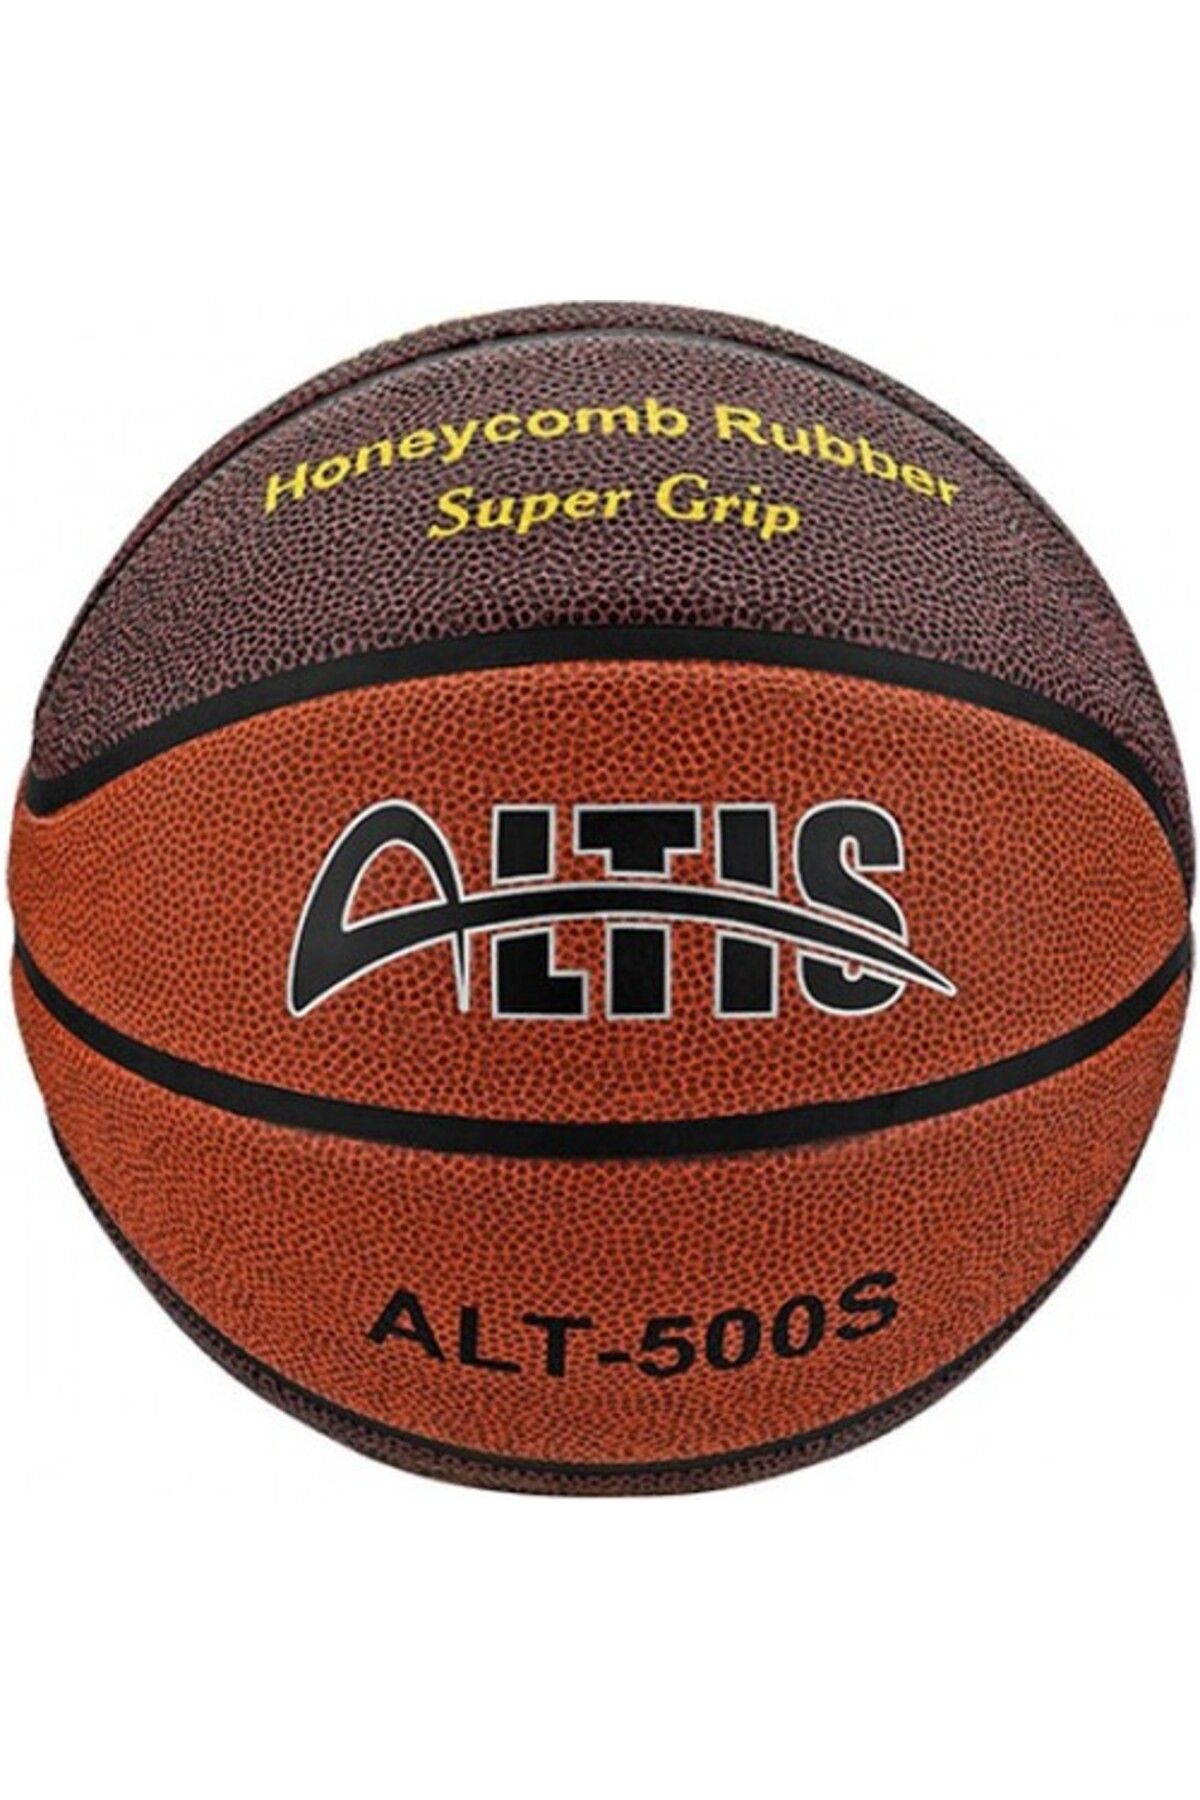 ALTIS Alt500s Super Grıp Basketbol Topu-5 Numara